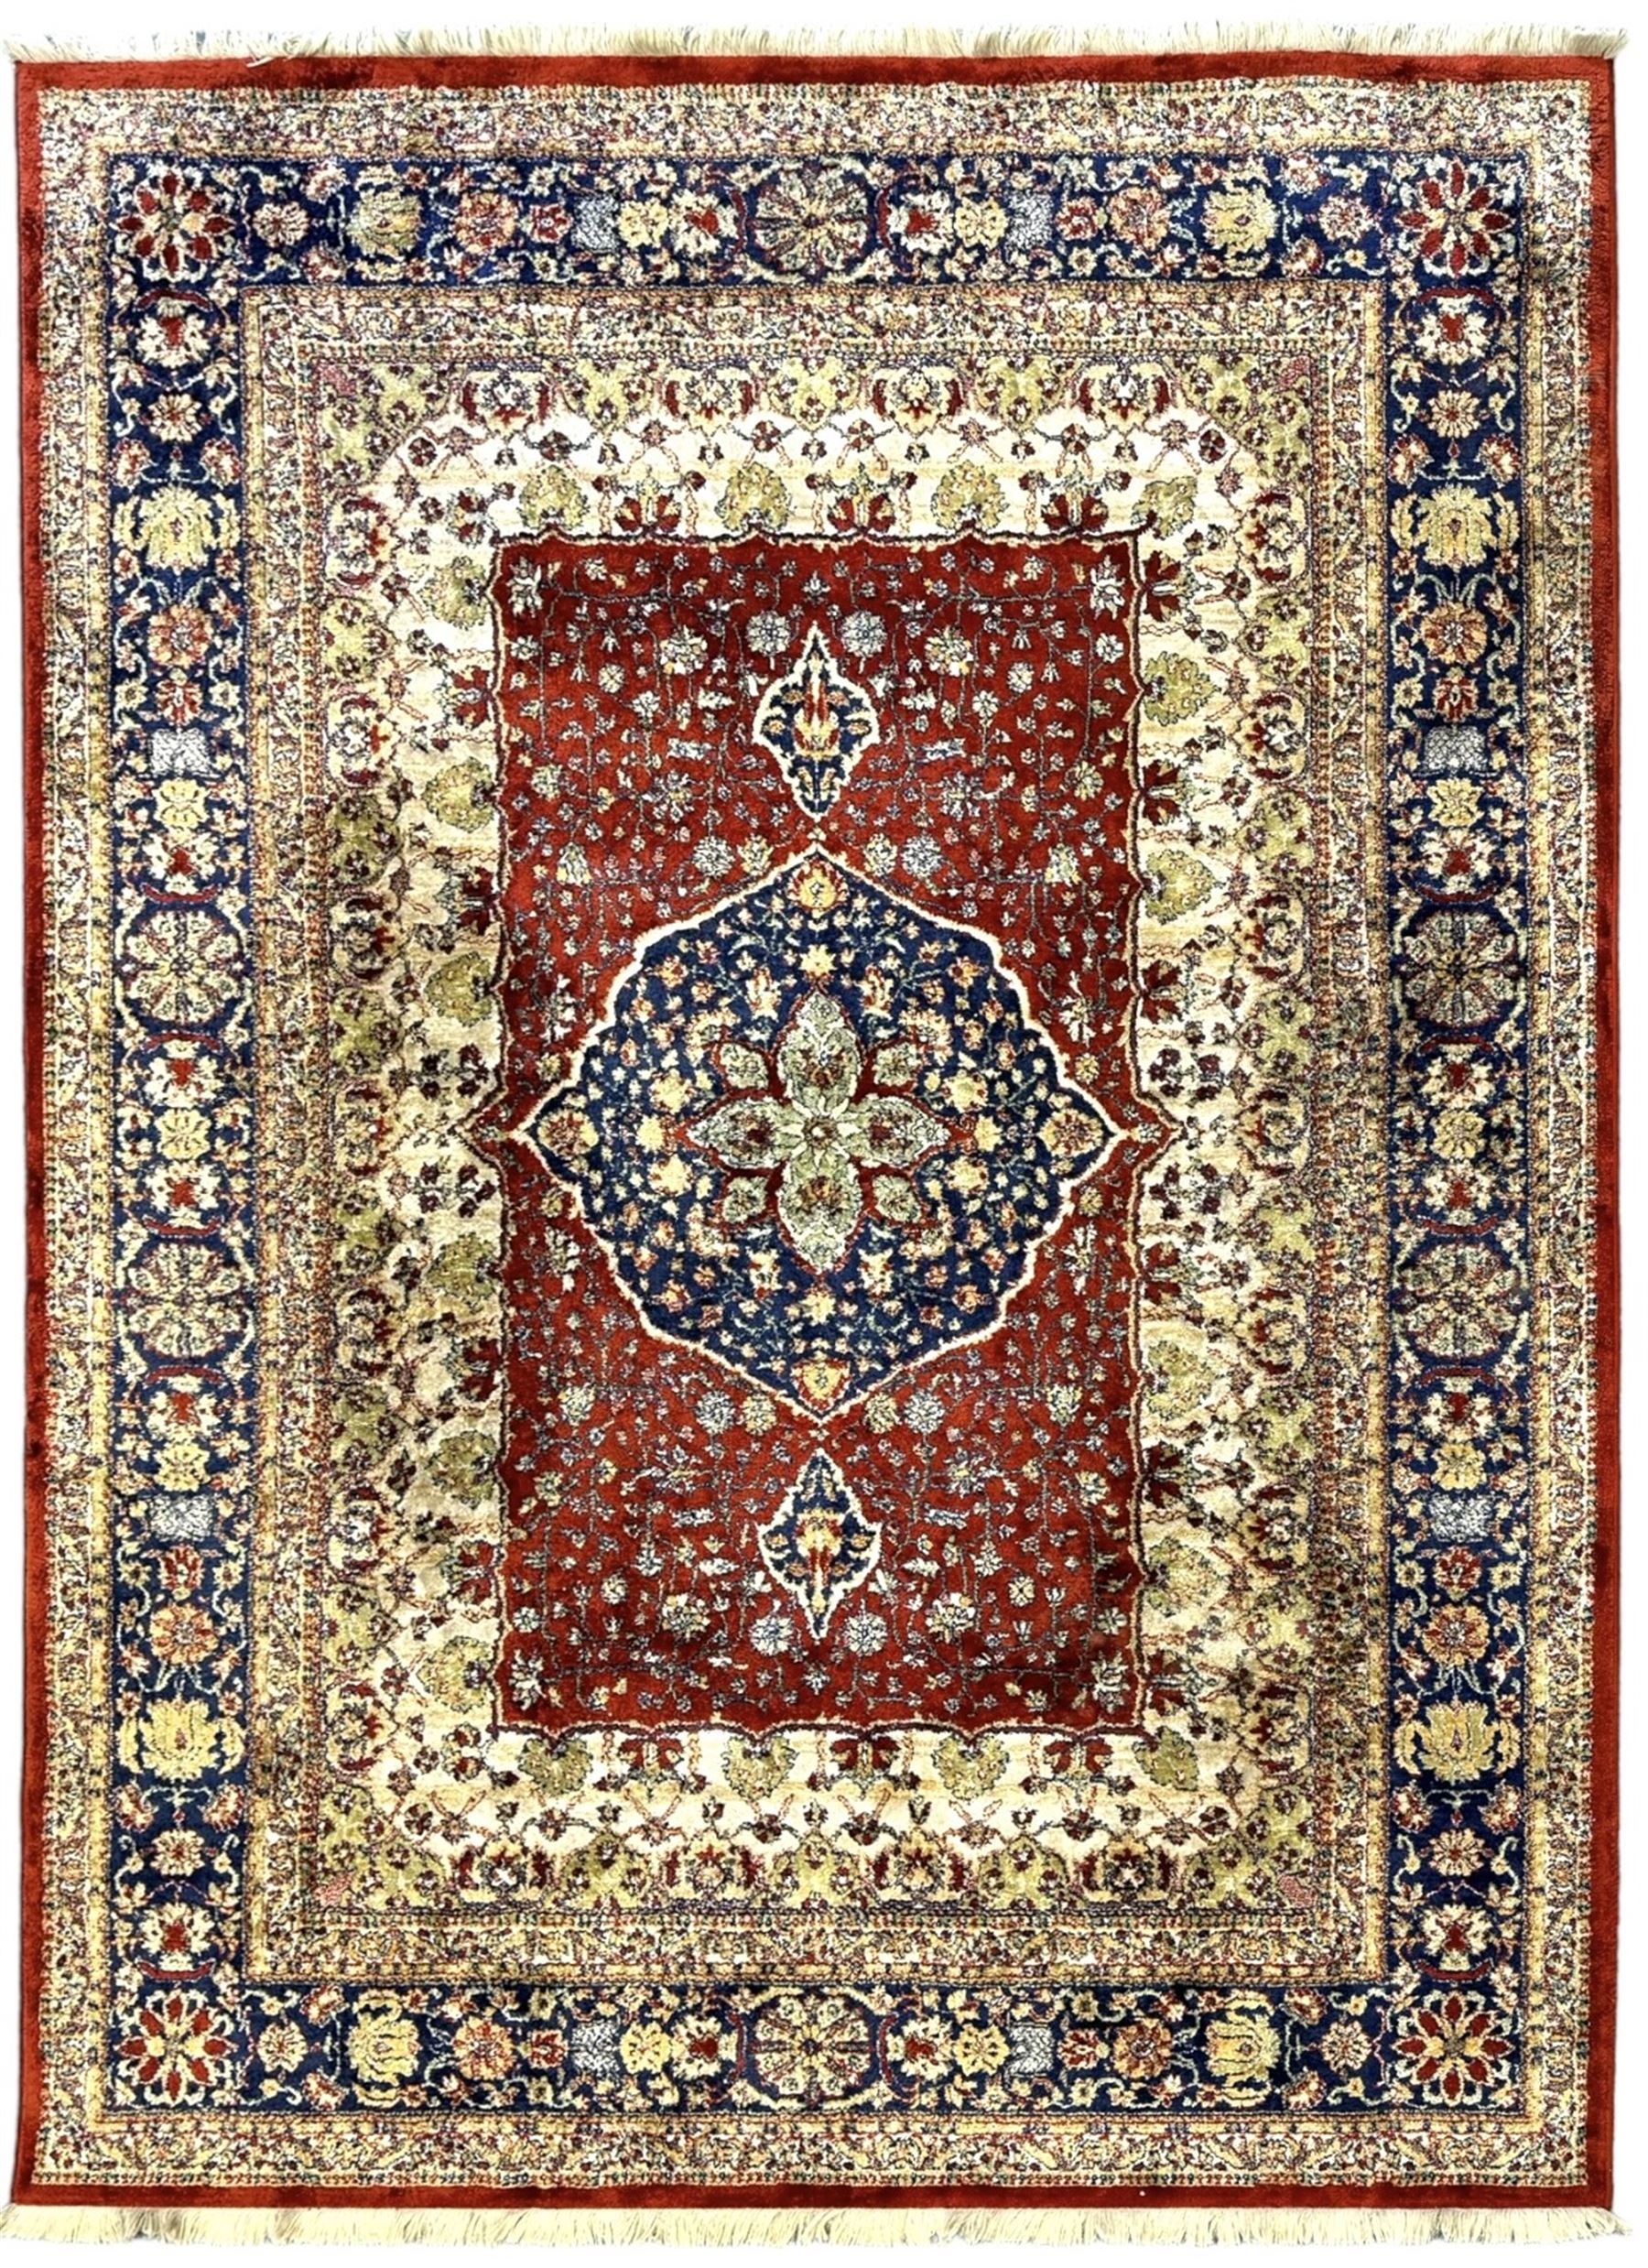 Persian design crimson ground rug